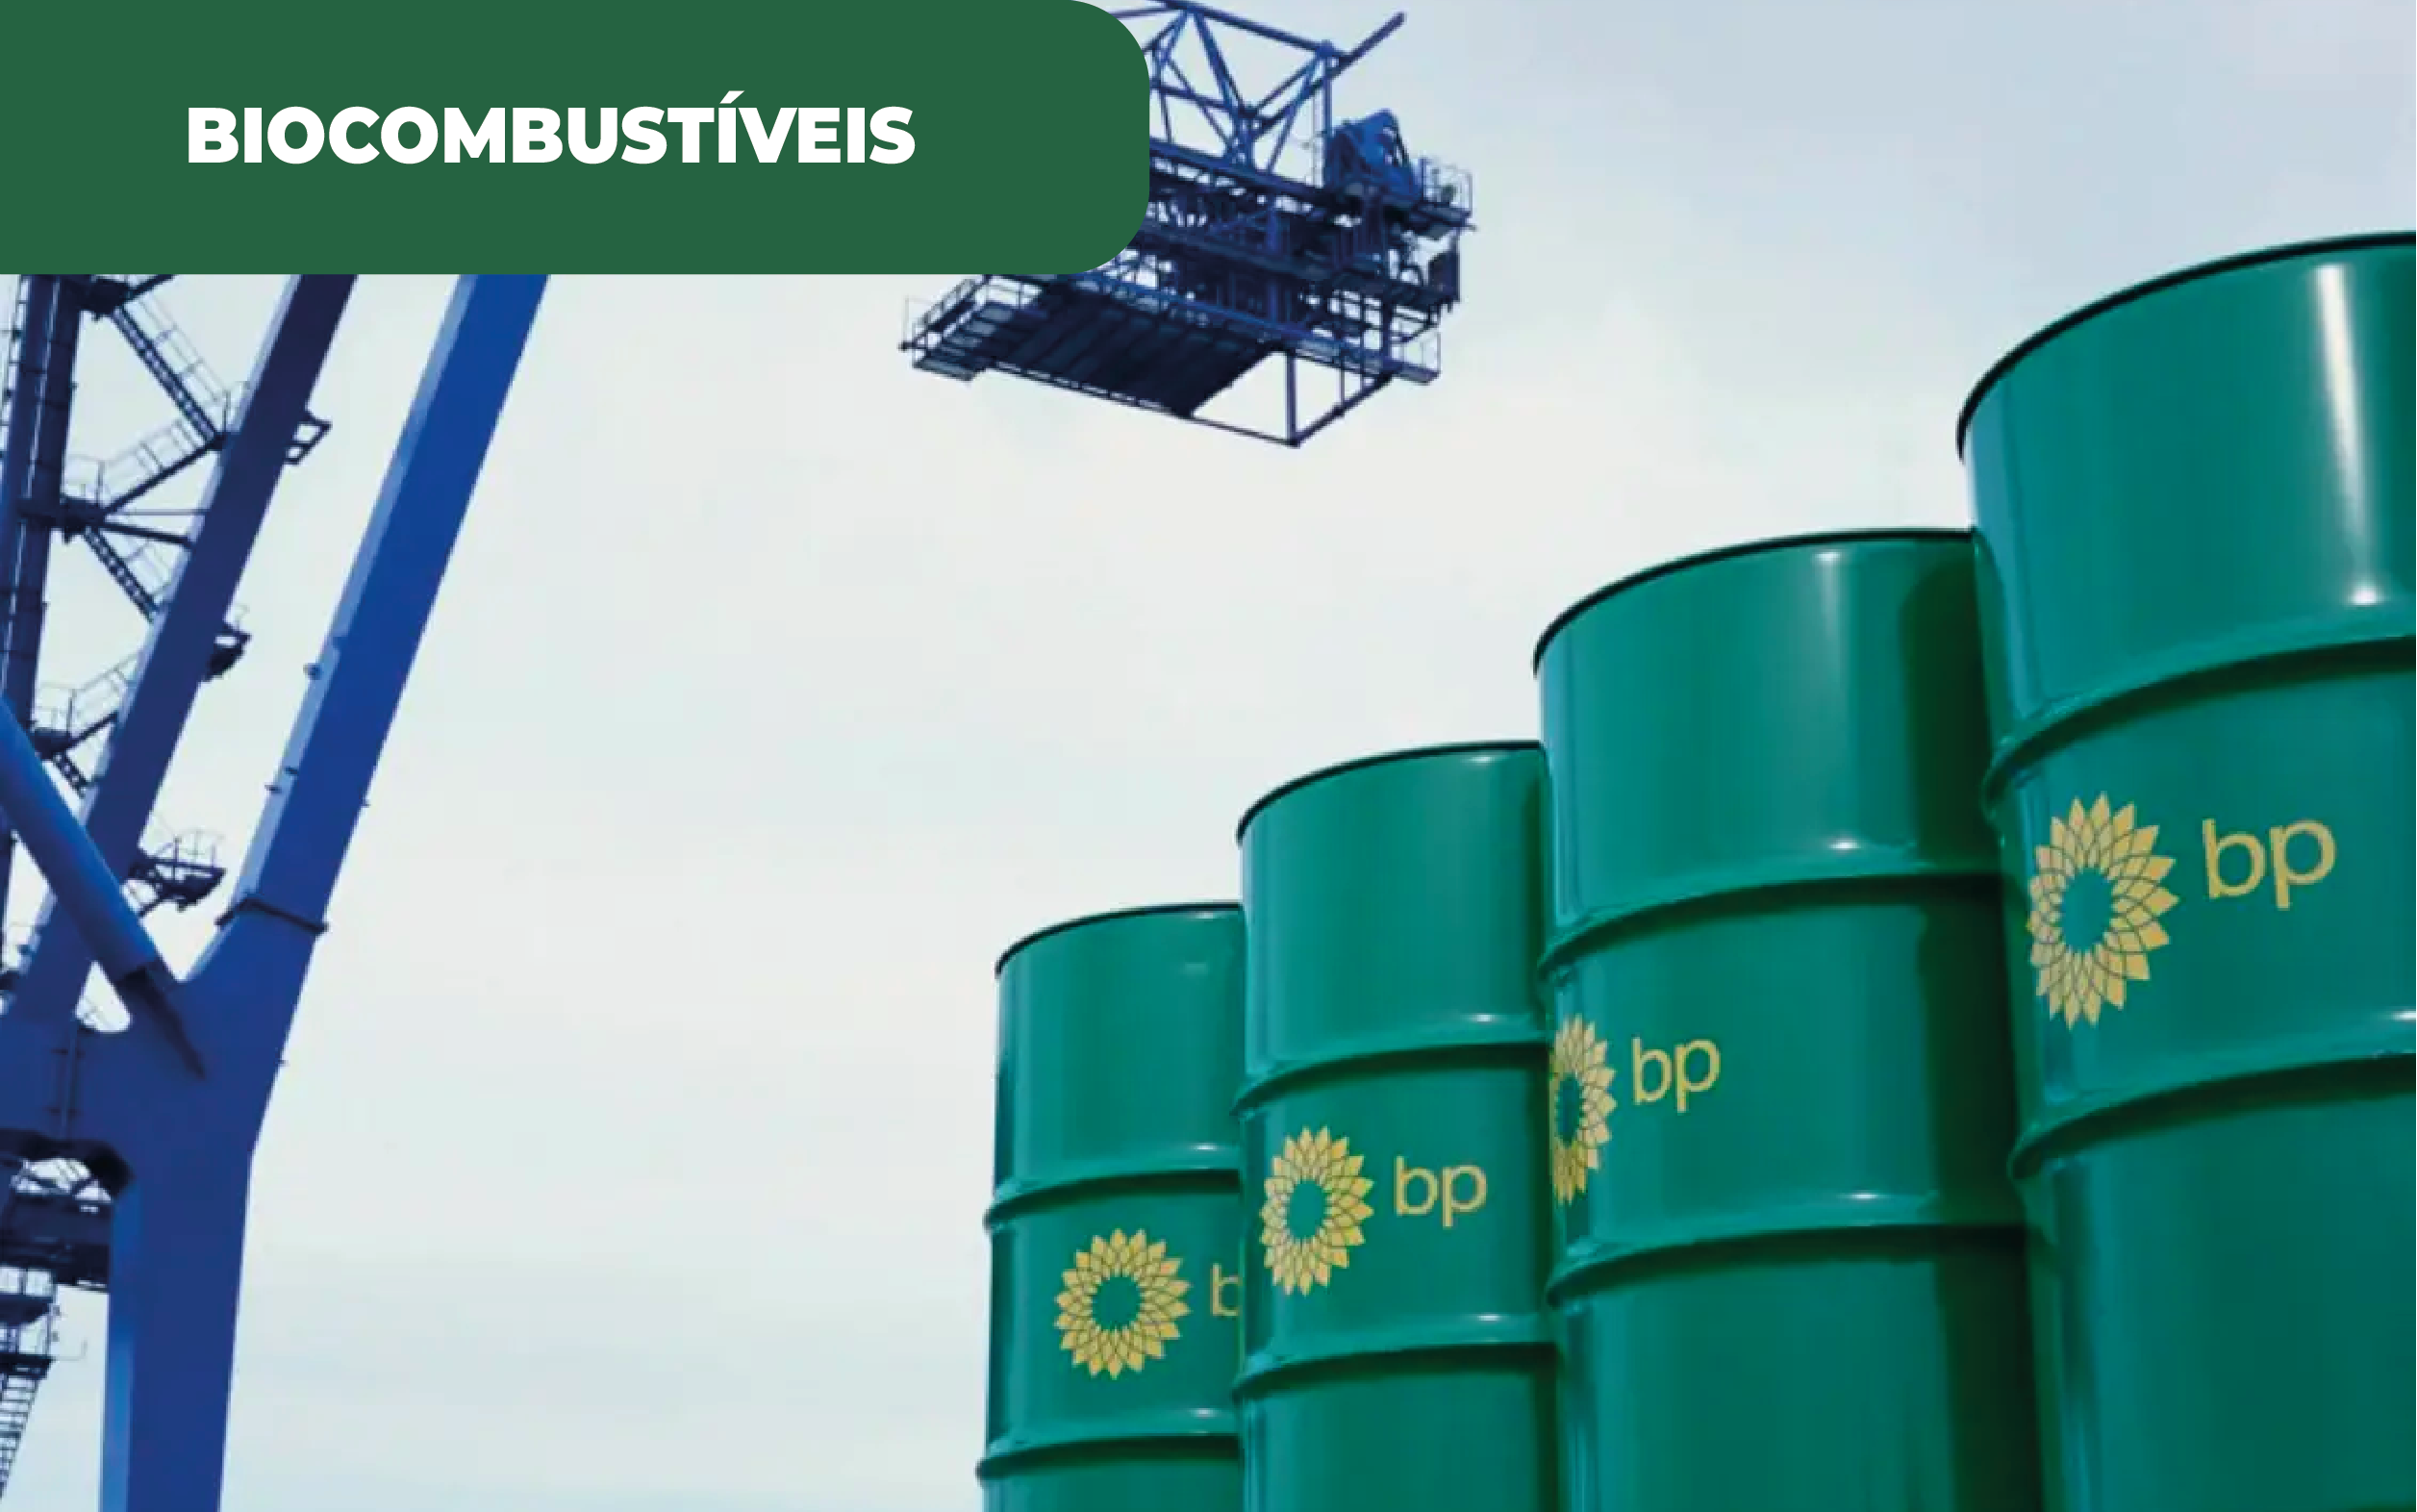 Imagem ilustrativa de bidões da BP, que se dedica à conversão de resíduos em biocombustível, junto da empresa WasteFuel, nos EUA